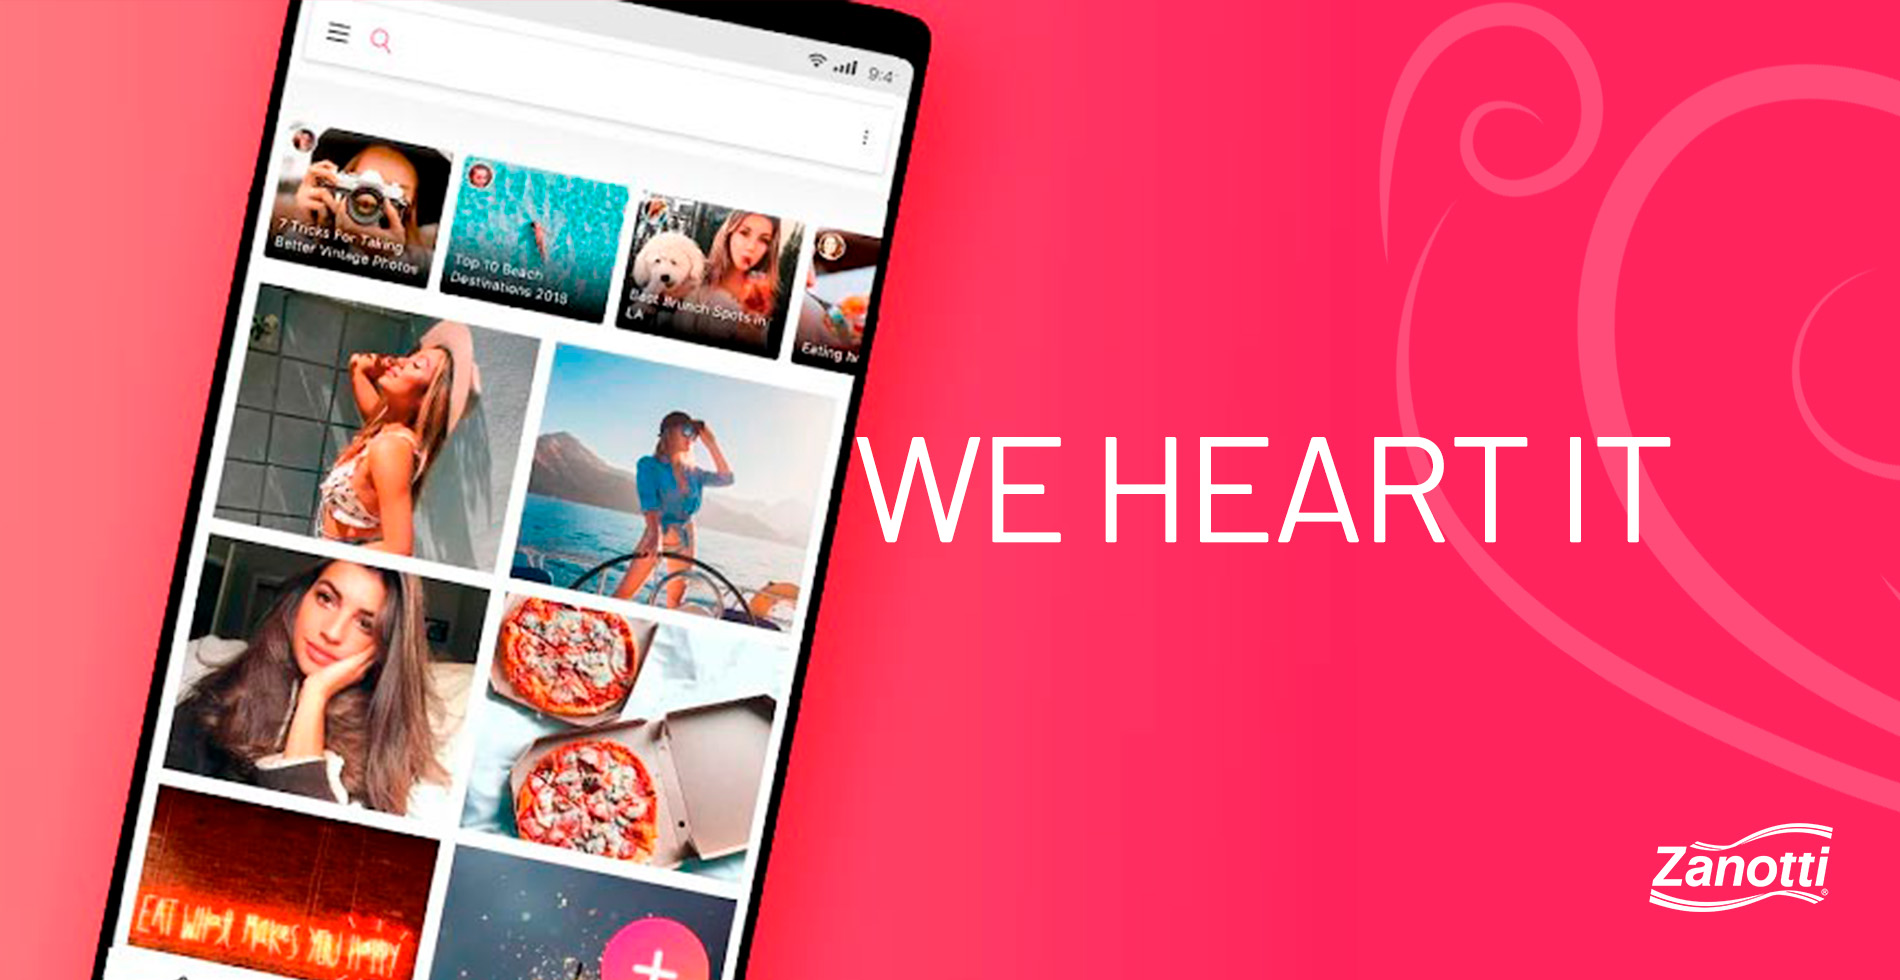 imagem com fundo rosa e com um celular aberto no aplicativo We Heart It, um dos aplicativos para estilista mencionados no conteúdo